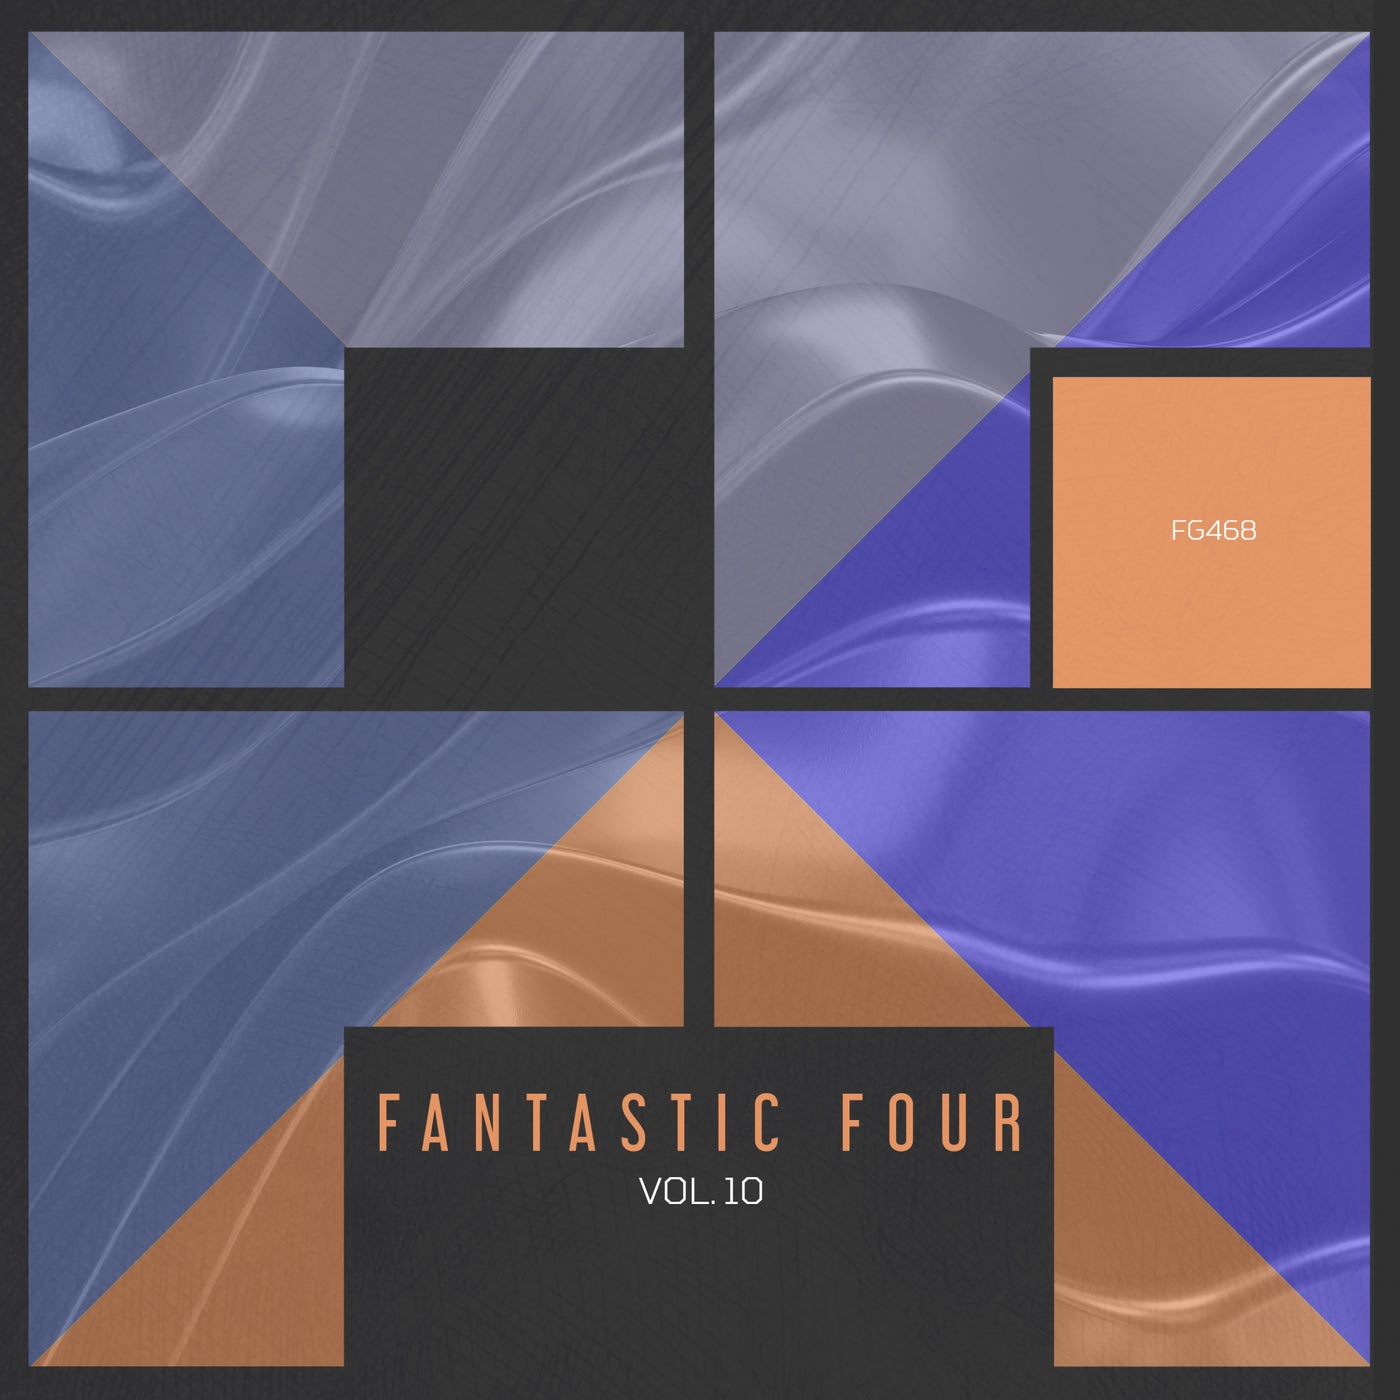 VA - Fantastic Four, Vol. 10 [FG468]